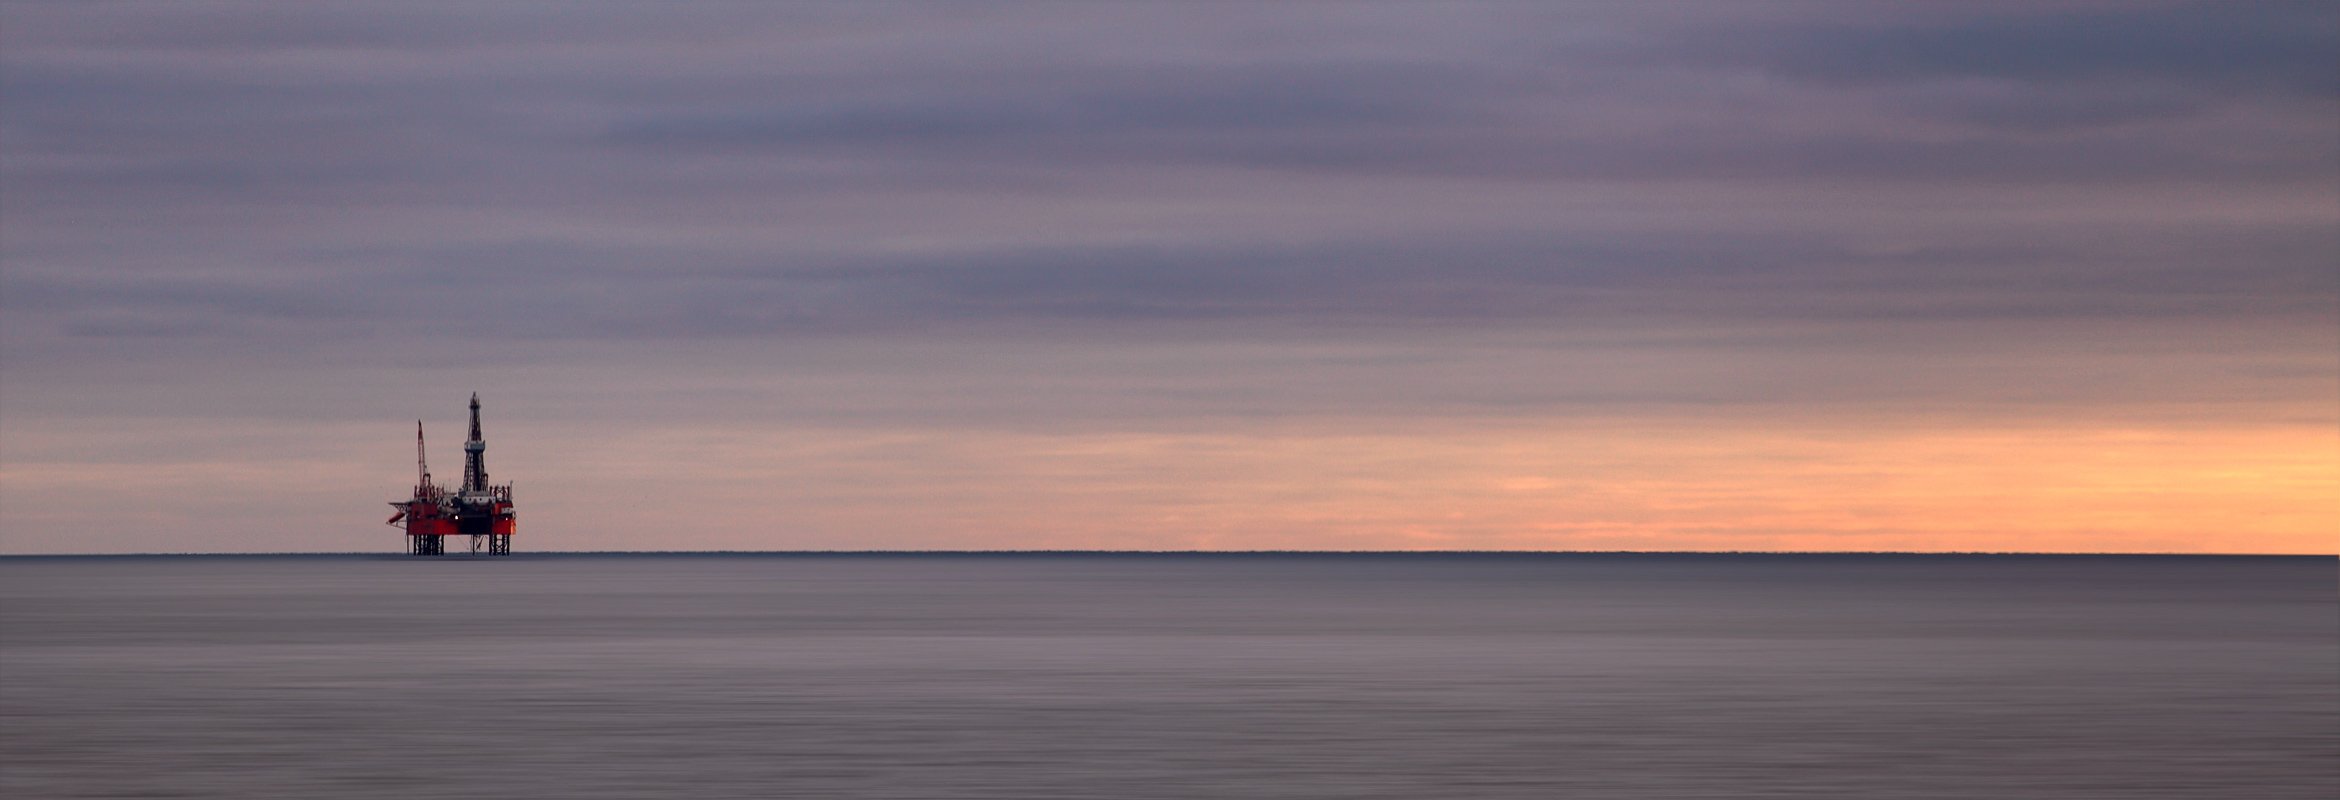 буровая платформа, балтийское море,вода, Игорь Дубровский